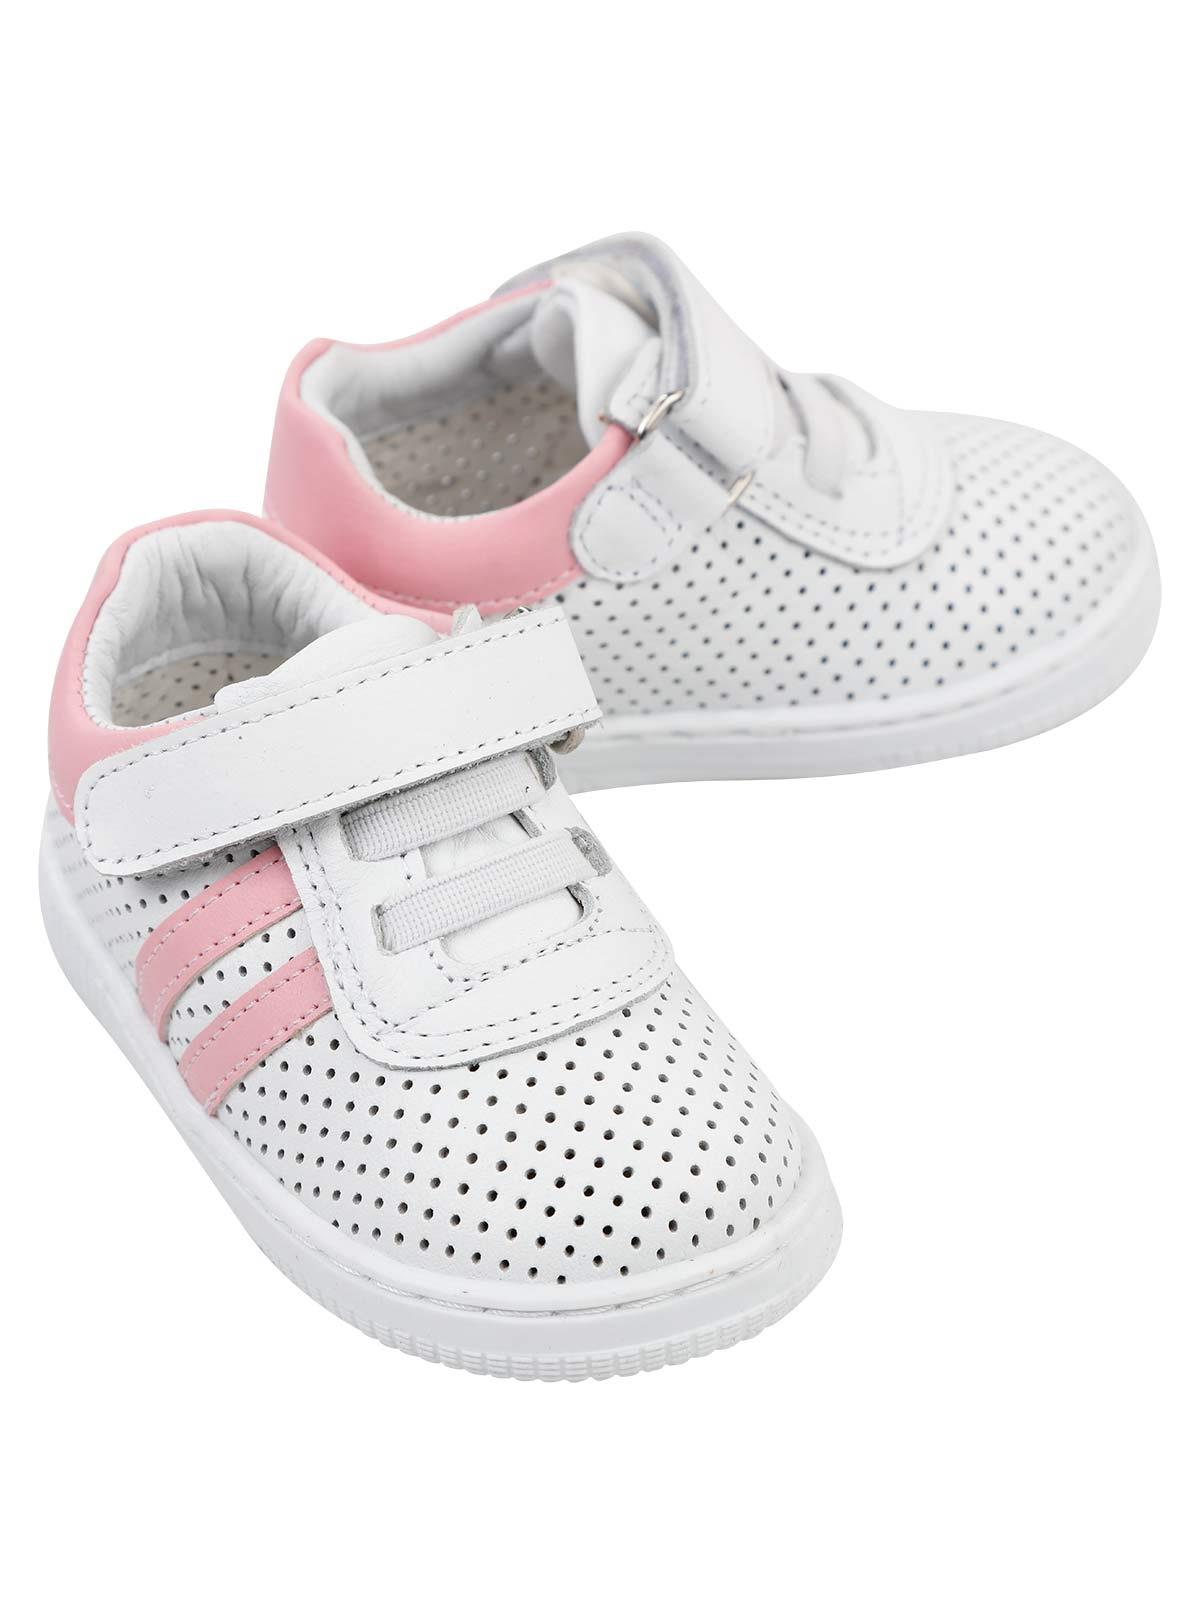 Baby Force Kız Bebek Deri İlkadım Ayakkabısı 19-22 Numara Beyaz-Fuşya